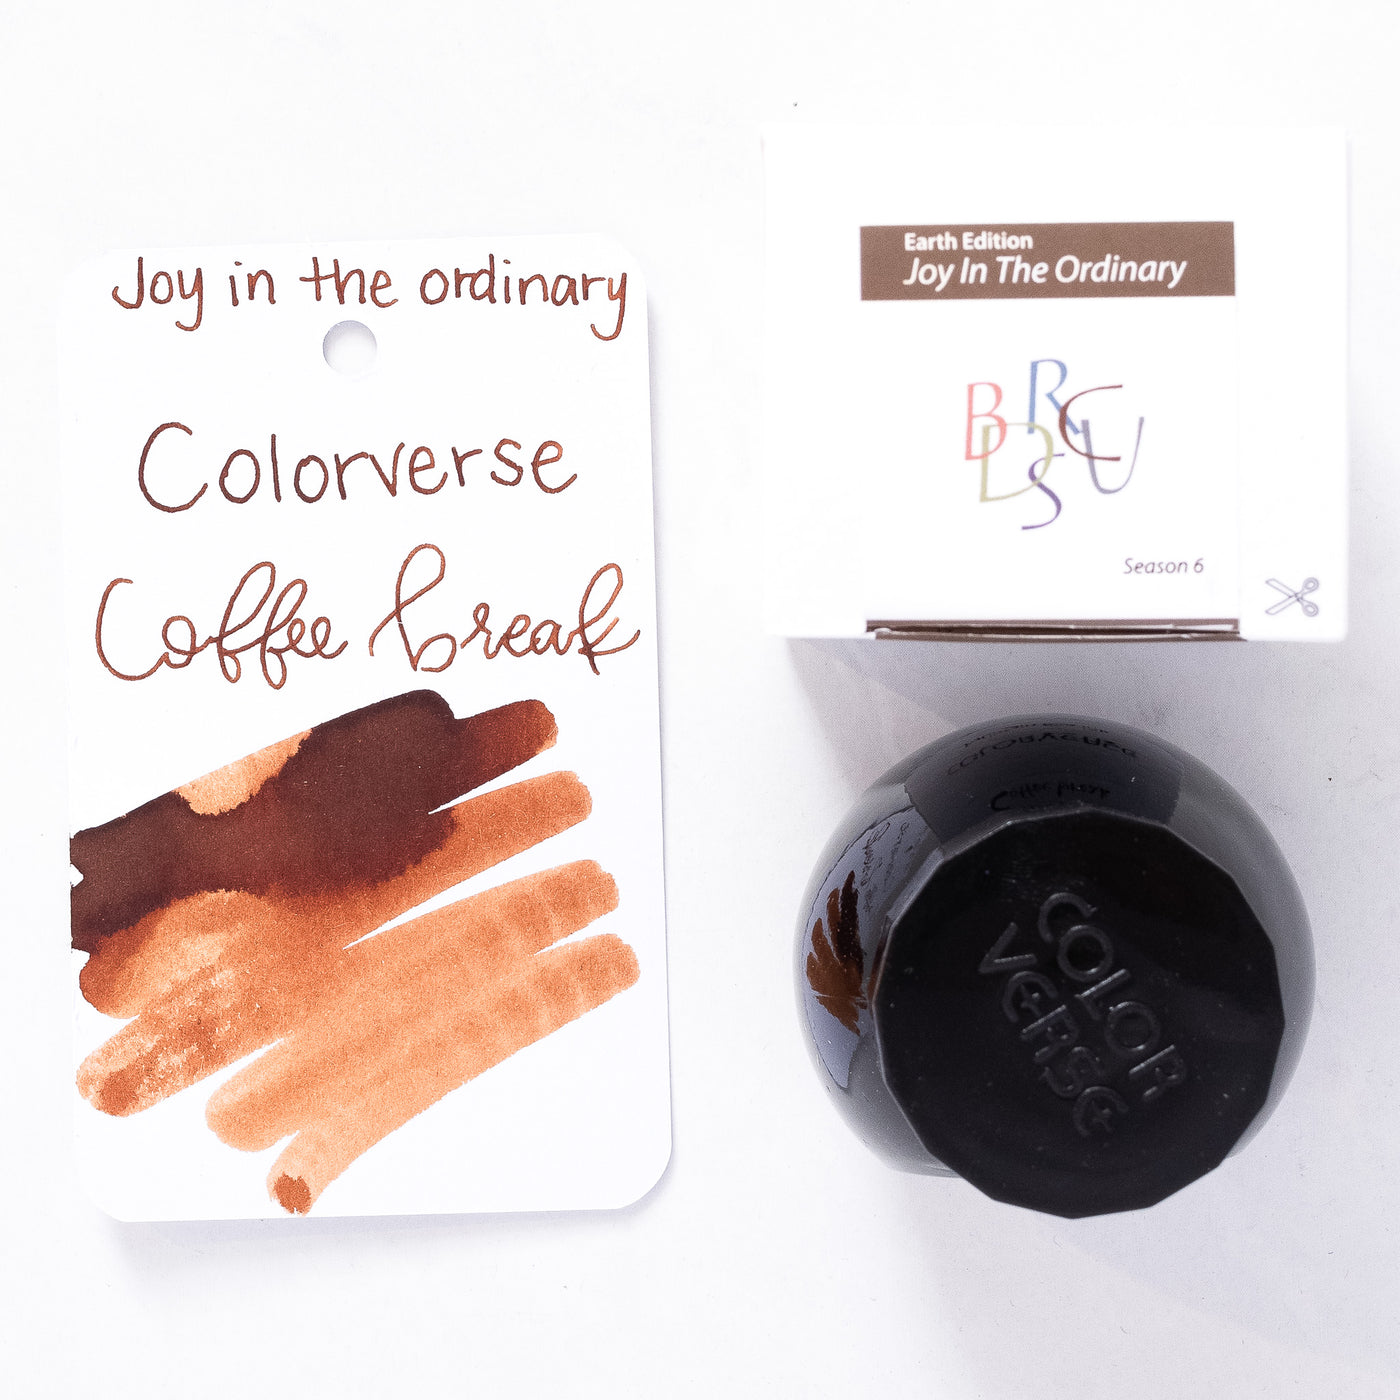 Colorverse Joy in the Ordinary Coffee Break Ink Bottle